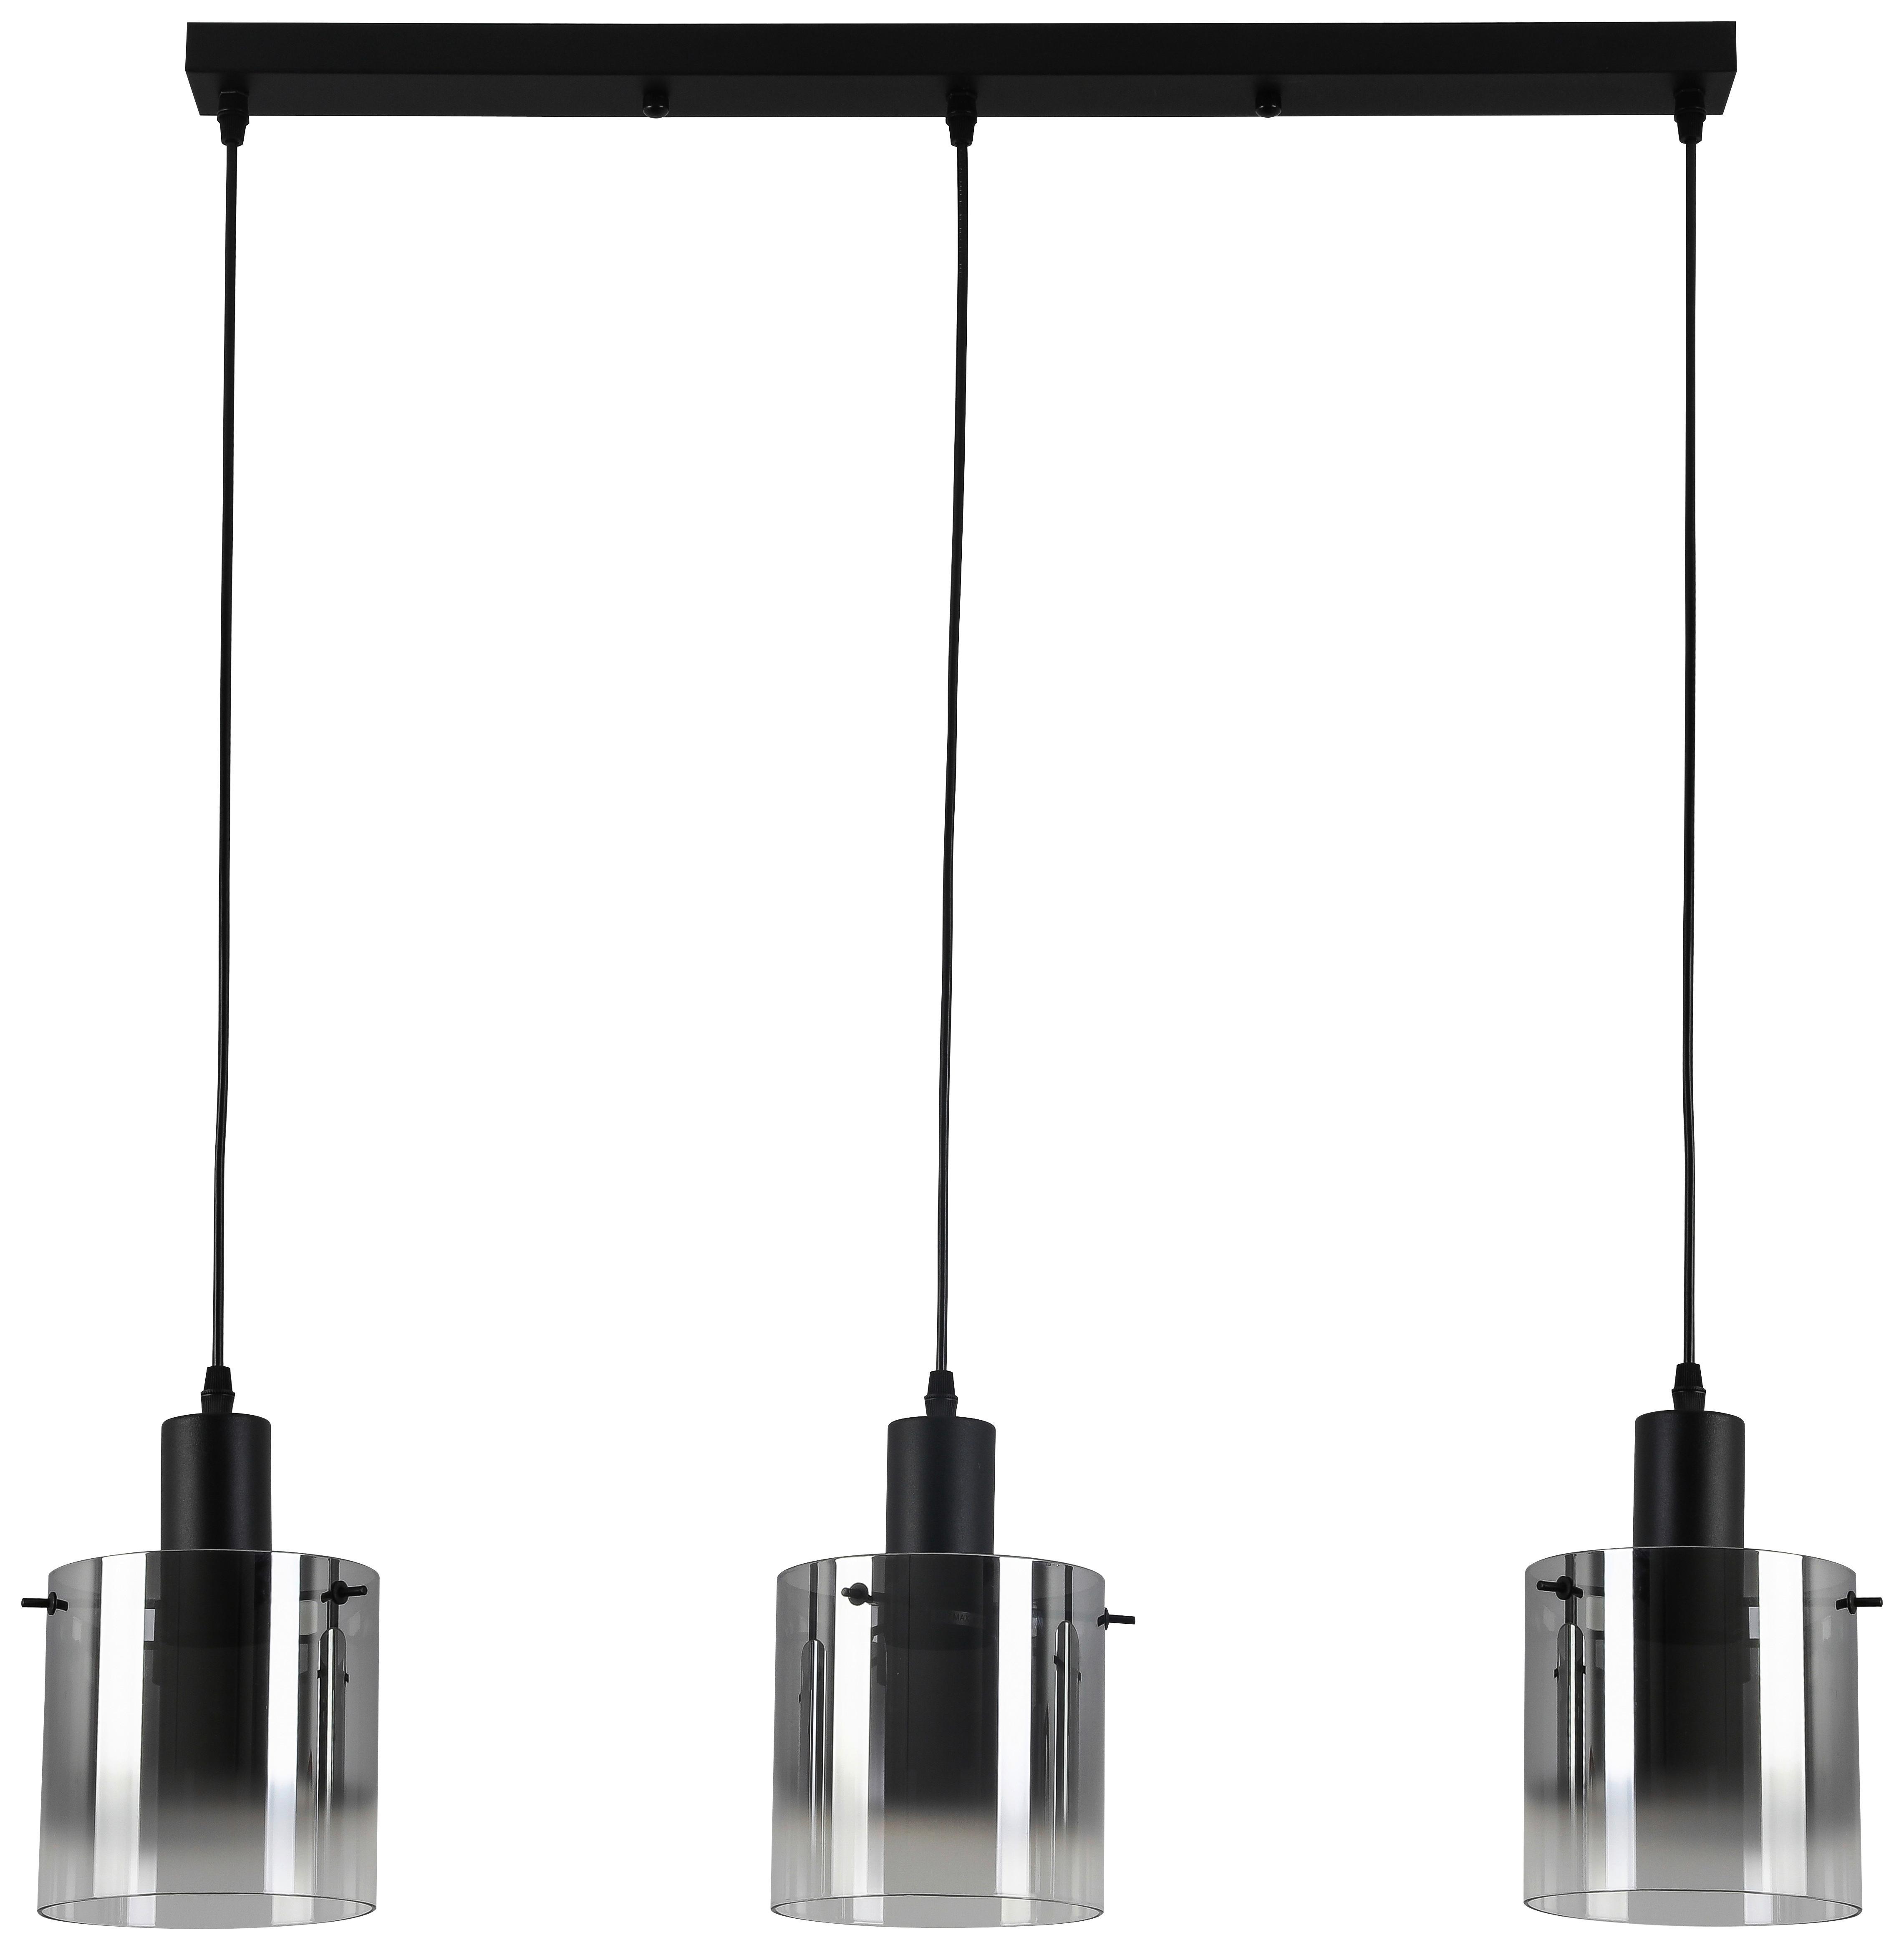 Lampă suspendată Christiano - negru, Modern, sticlă/metal (80/15/120cm) - Premium Living